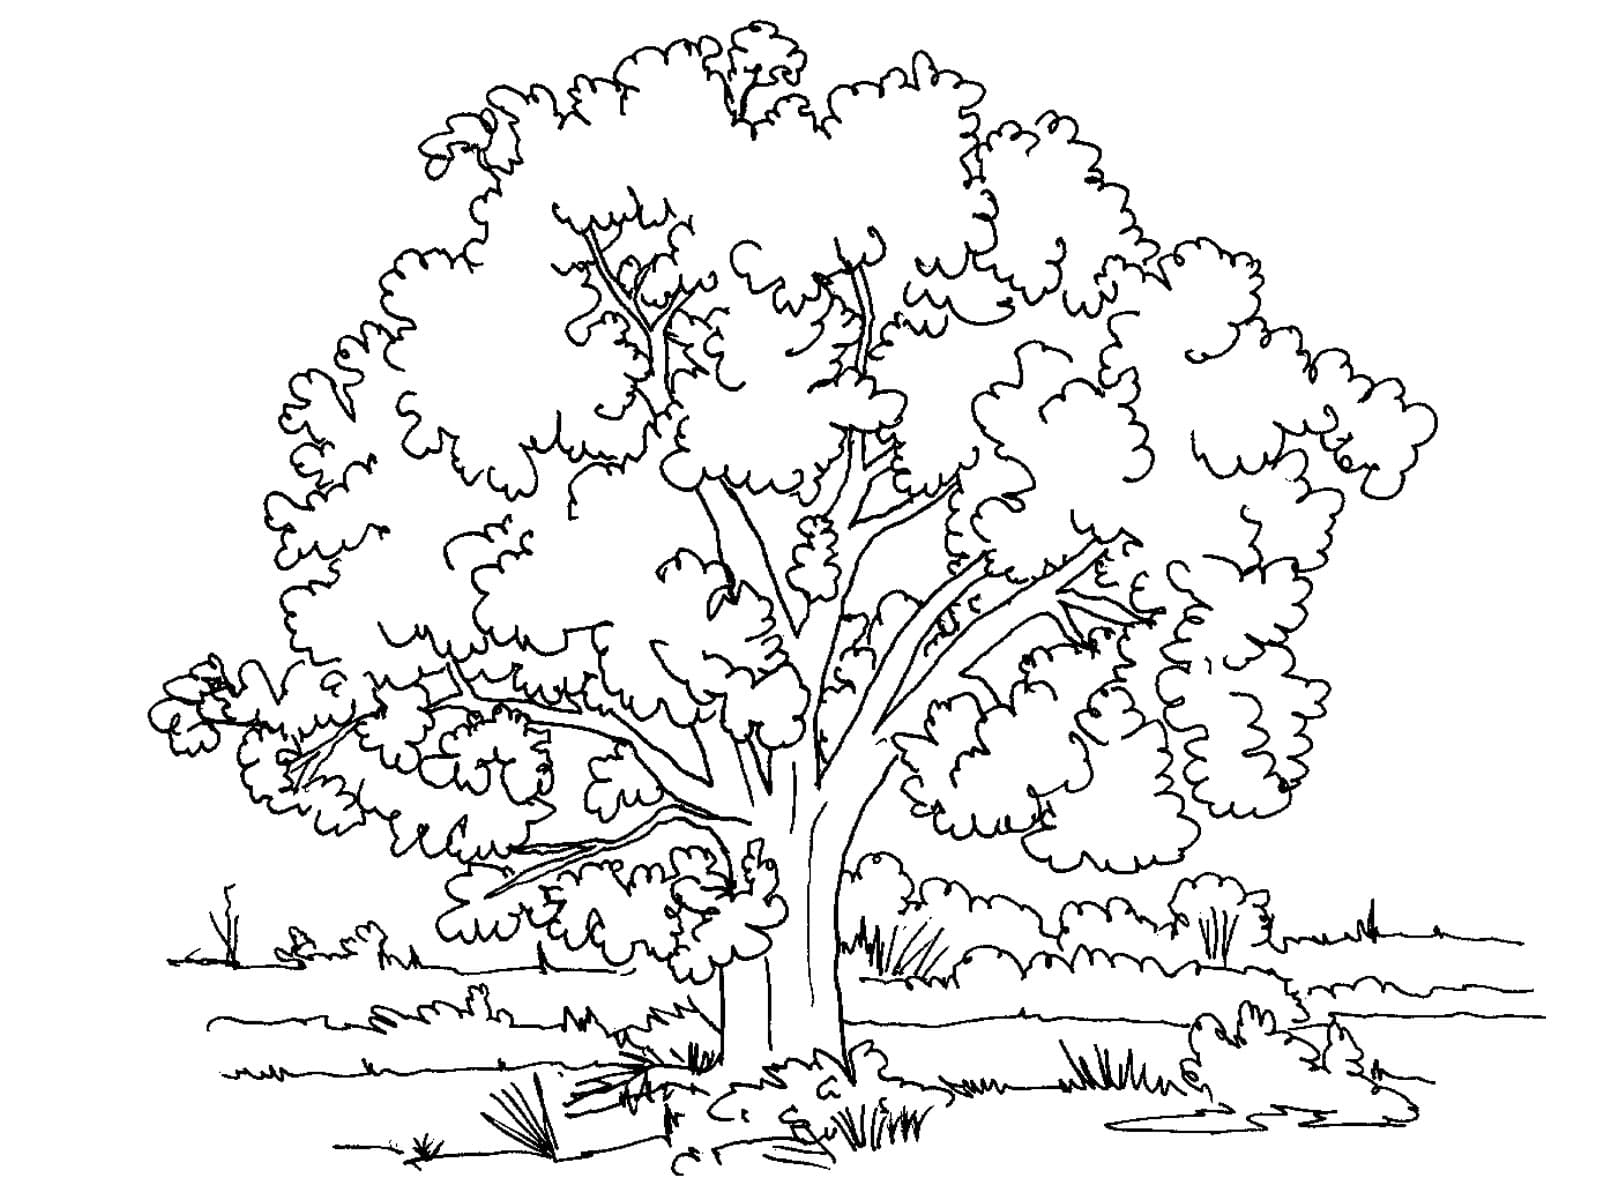 Ёольшое дерево